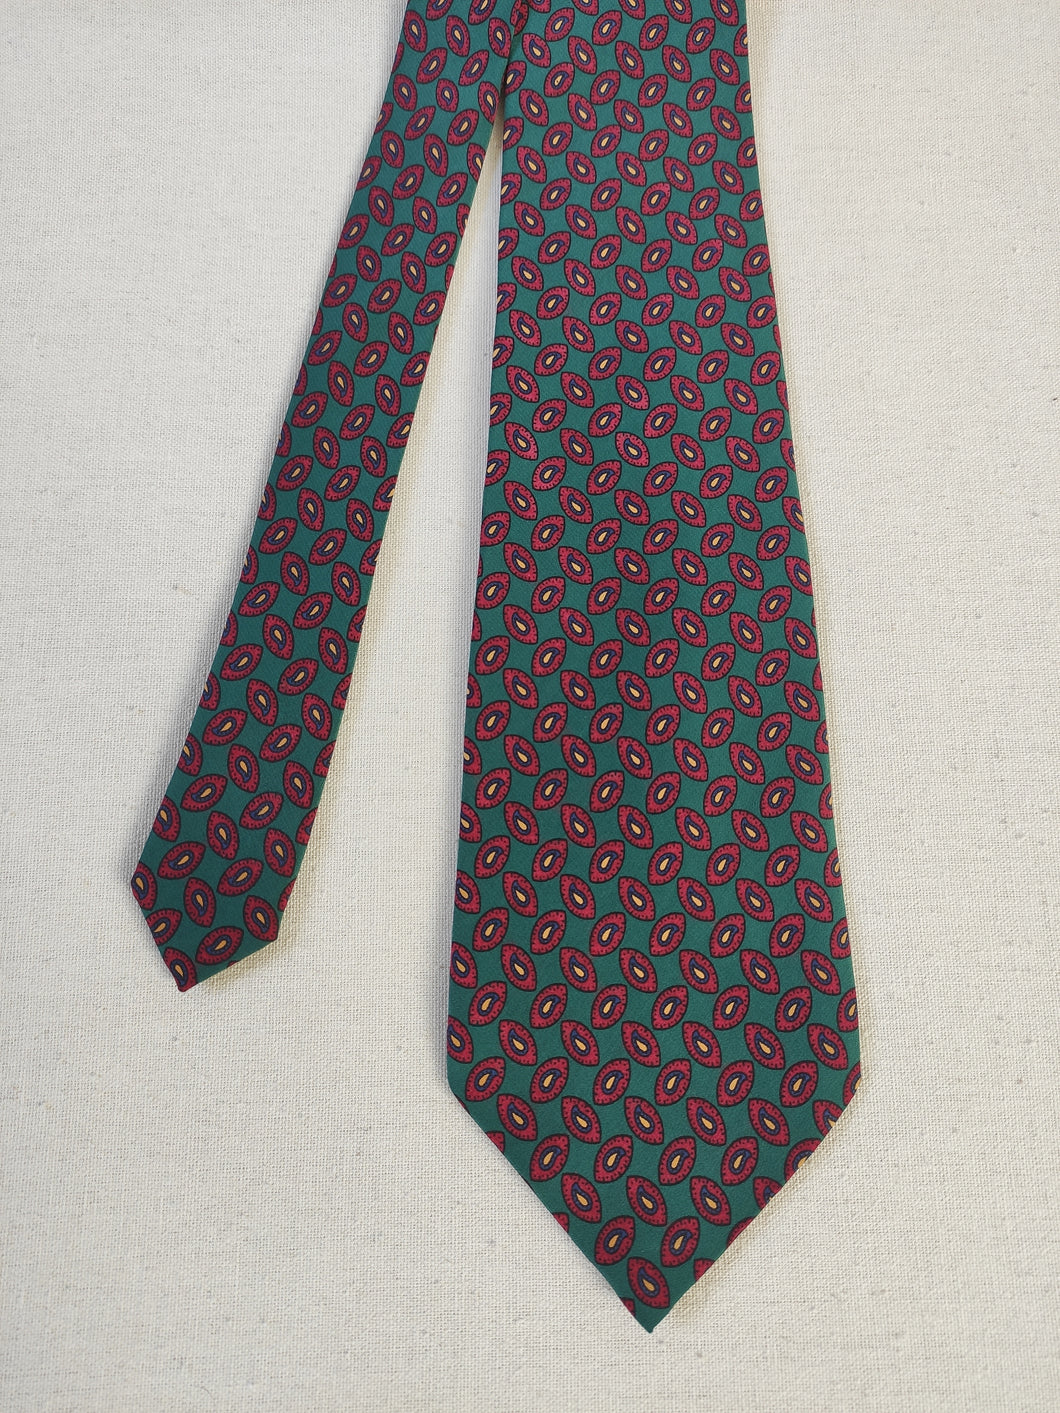 Cravate vintage en soie à motif paisley Made in Italy